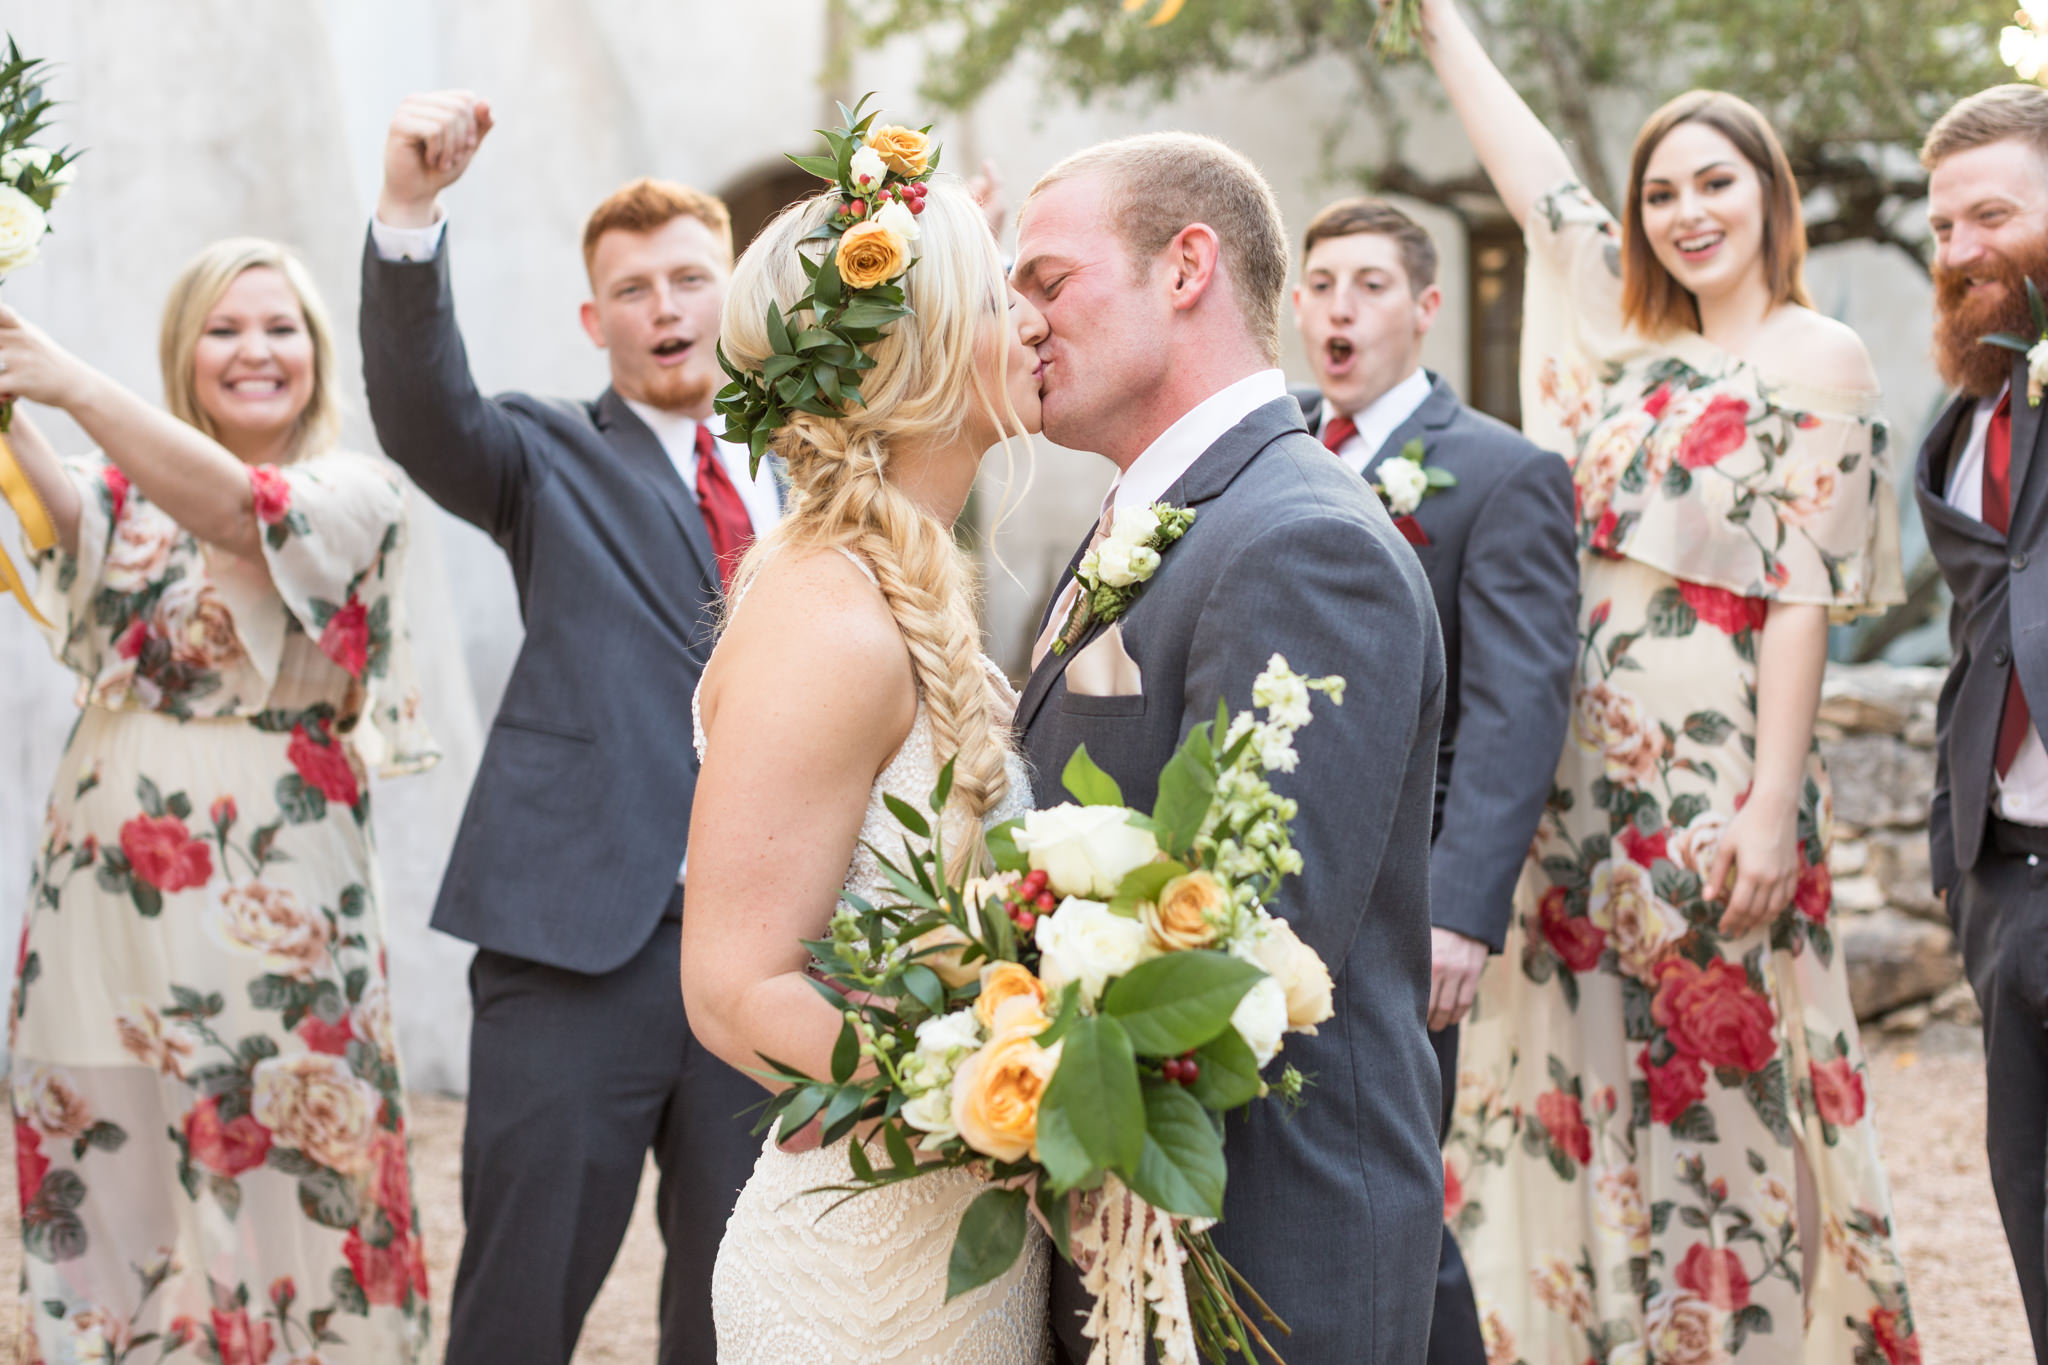 A Boho Inspired Wedding at Lost Mission in Spring Branch, TX by Dawn Elizabeth Studios, San Antonio Wedding Photographer, Boerne Wedding Photographer